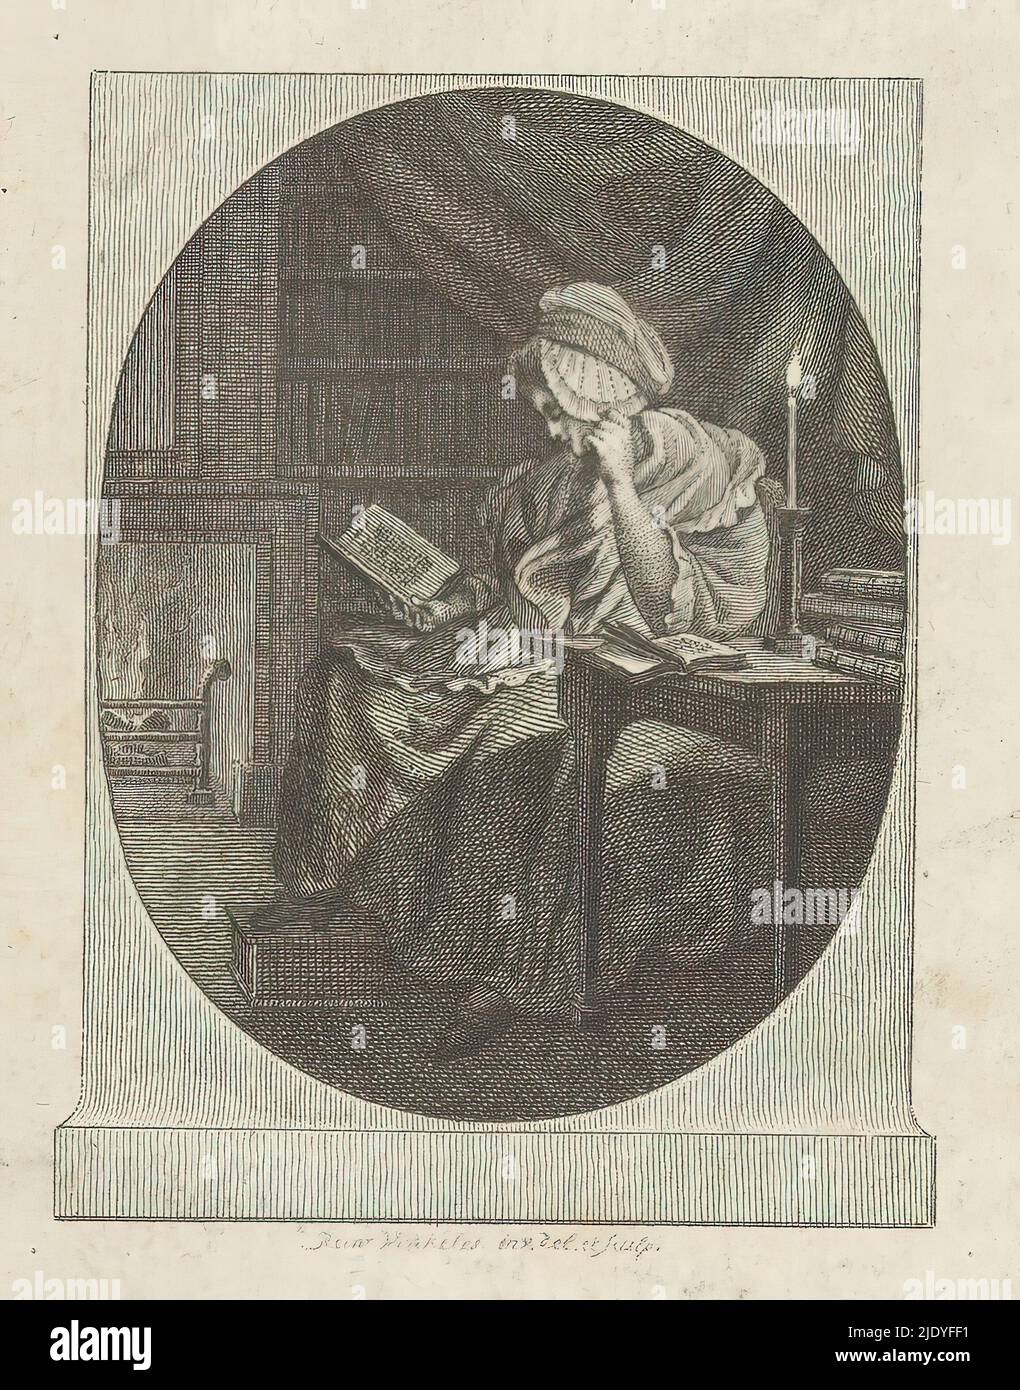 Femme lisant aux chandelles, imprimeur: Reinier Vinkeles (I), (mentionné sur l'objet), après son propre dessin par: Reinier Vinkeles (I), (mentionné sur l'objet), c. 1788, papier, gravure, hauteur 108 mm × largeur 83 mm Banque D'Images